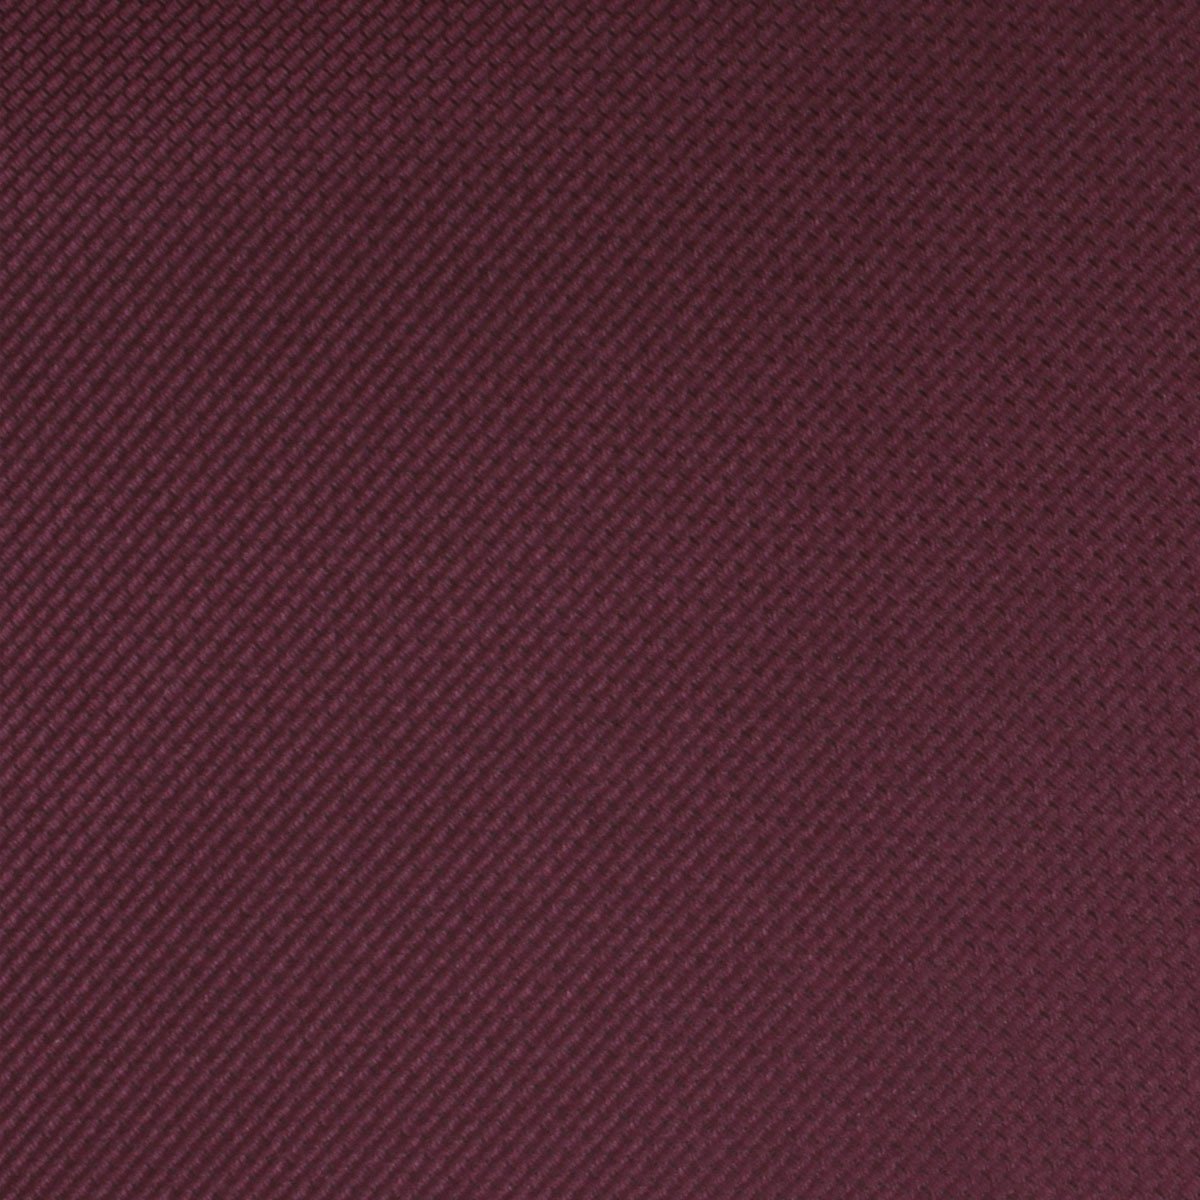 Garnet Wine Burgundy Weave Necktie Fabric